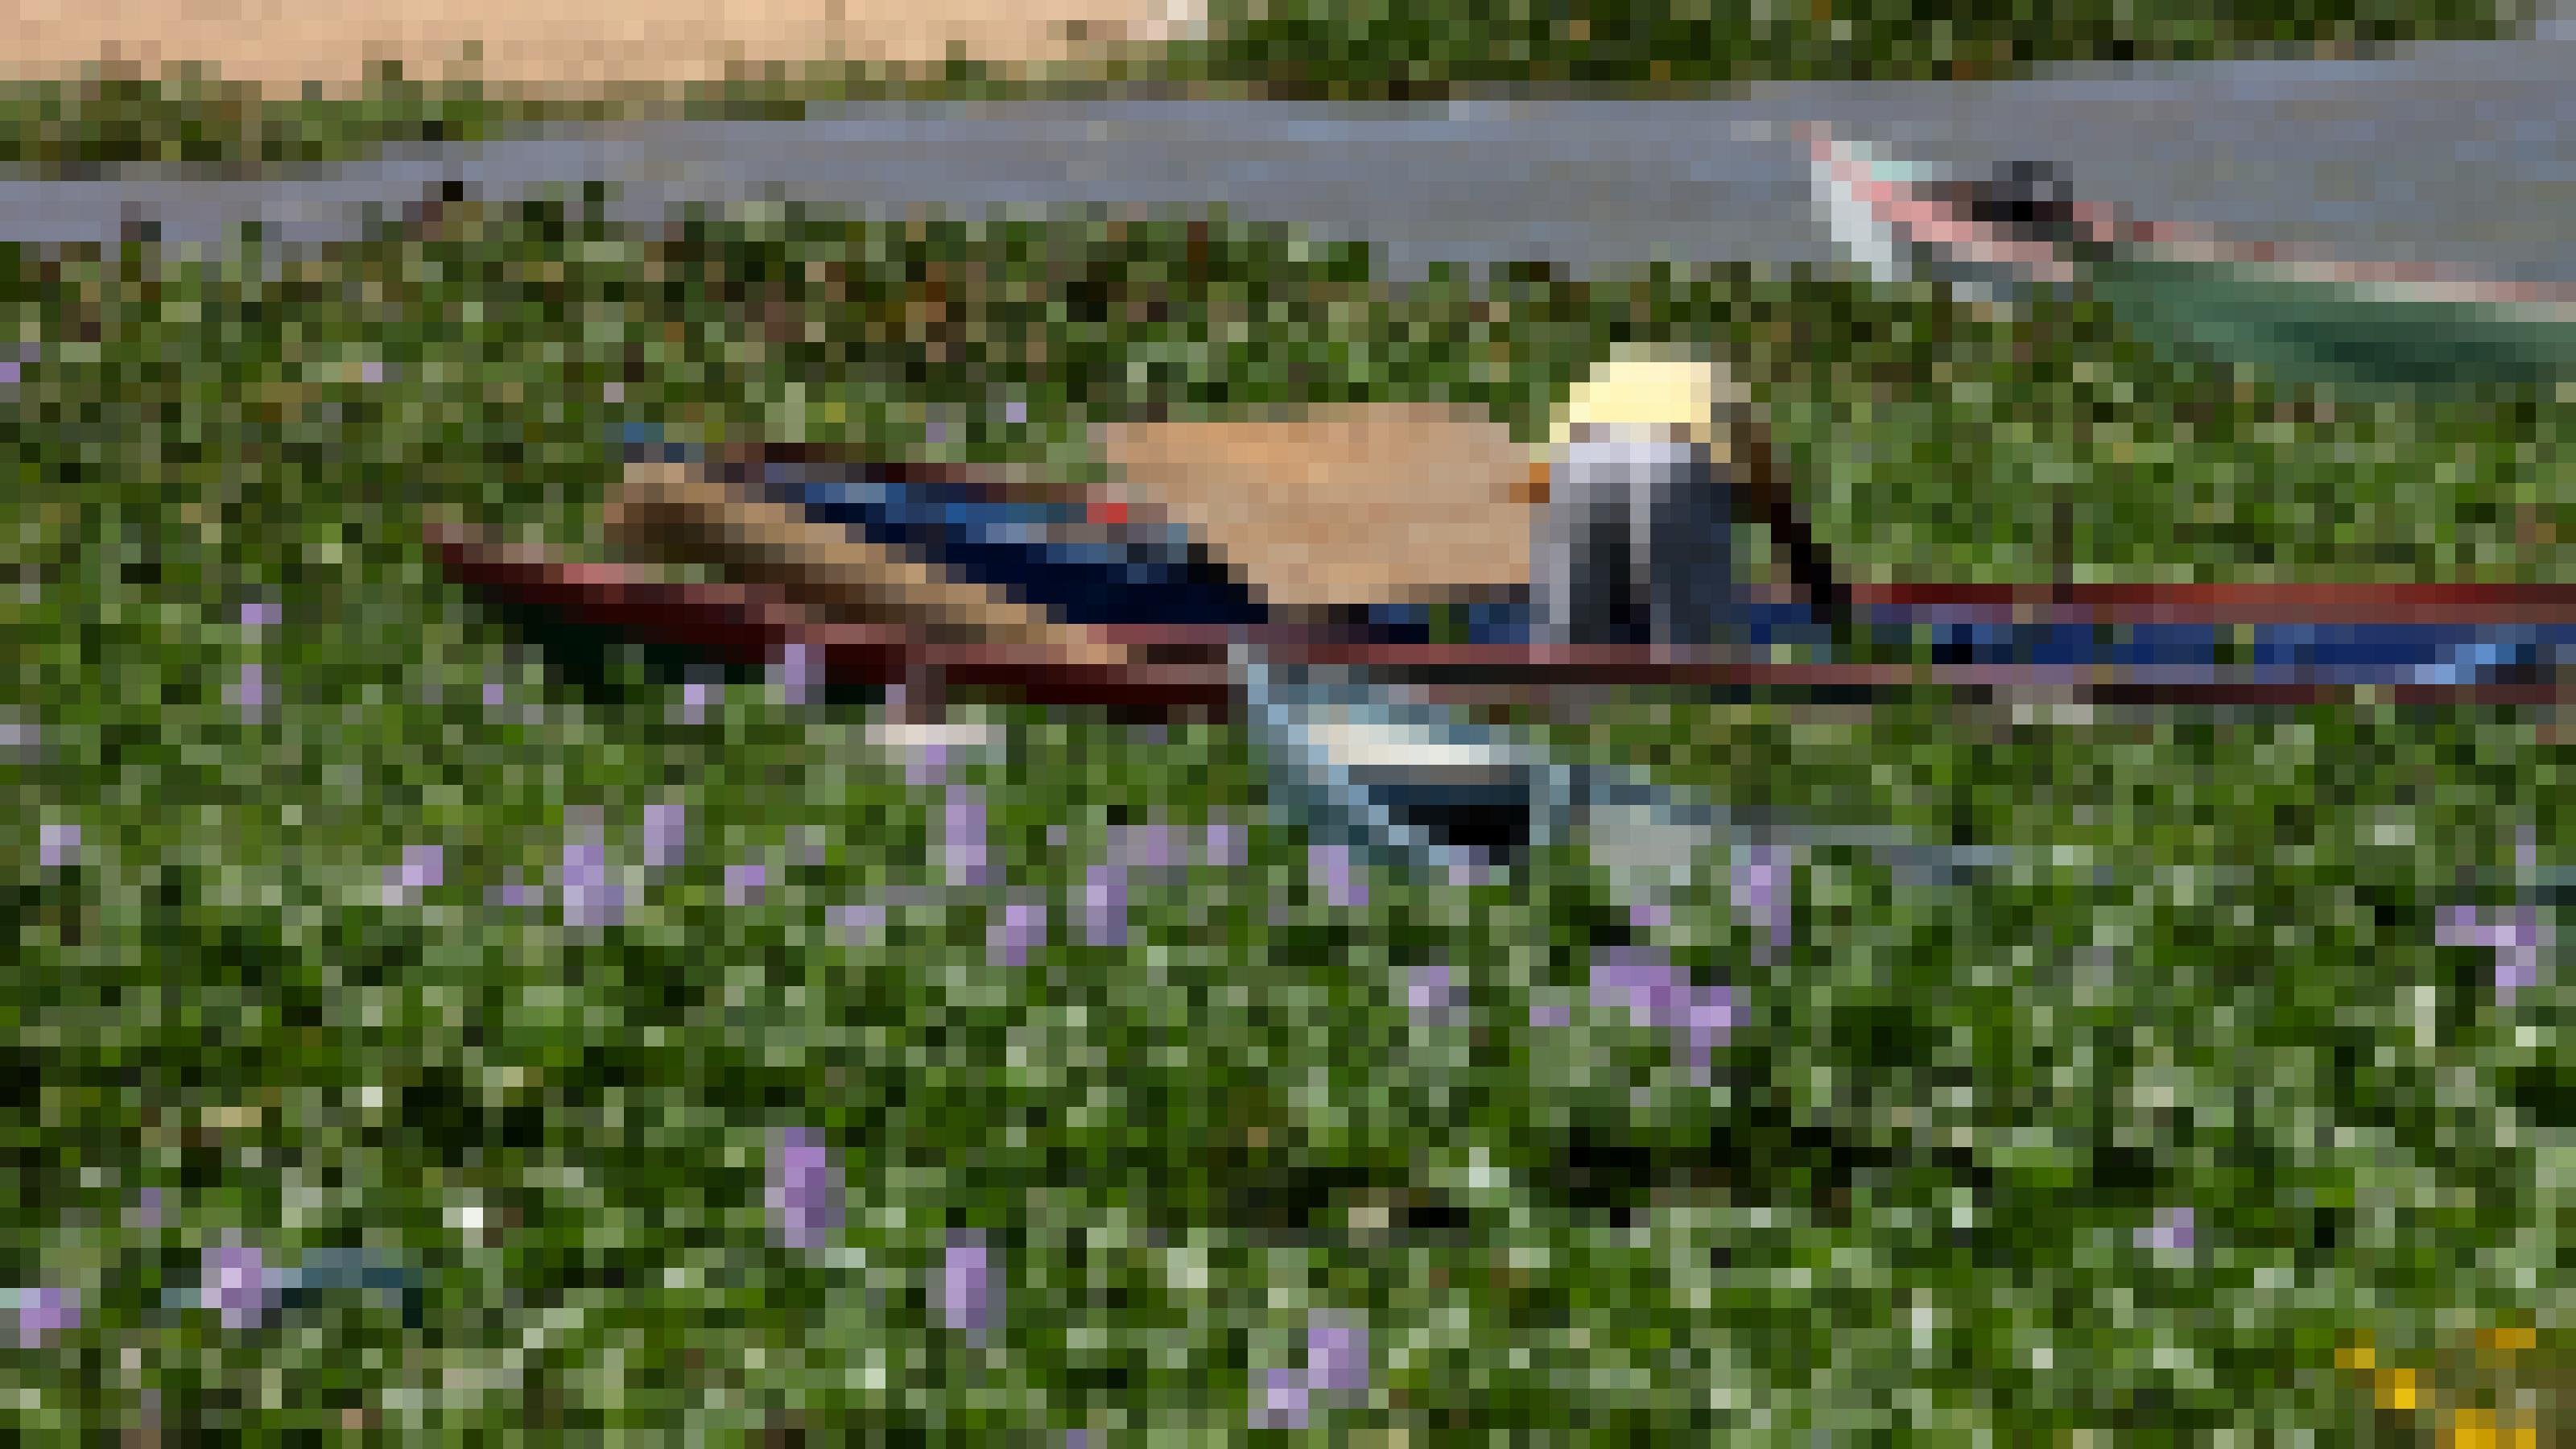 Zahlreiche Boote liegen im Wasser, das vor lauter Pflanzen kaum sichtbar ist. An einem der Boote steht gebückt ein Mensch. Die Pflanzen tragen lilafarbene Blüten.